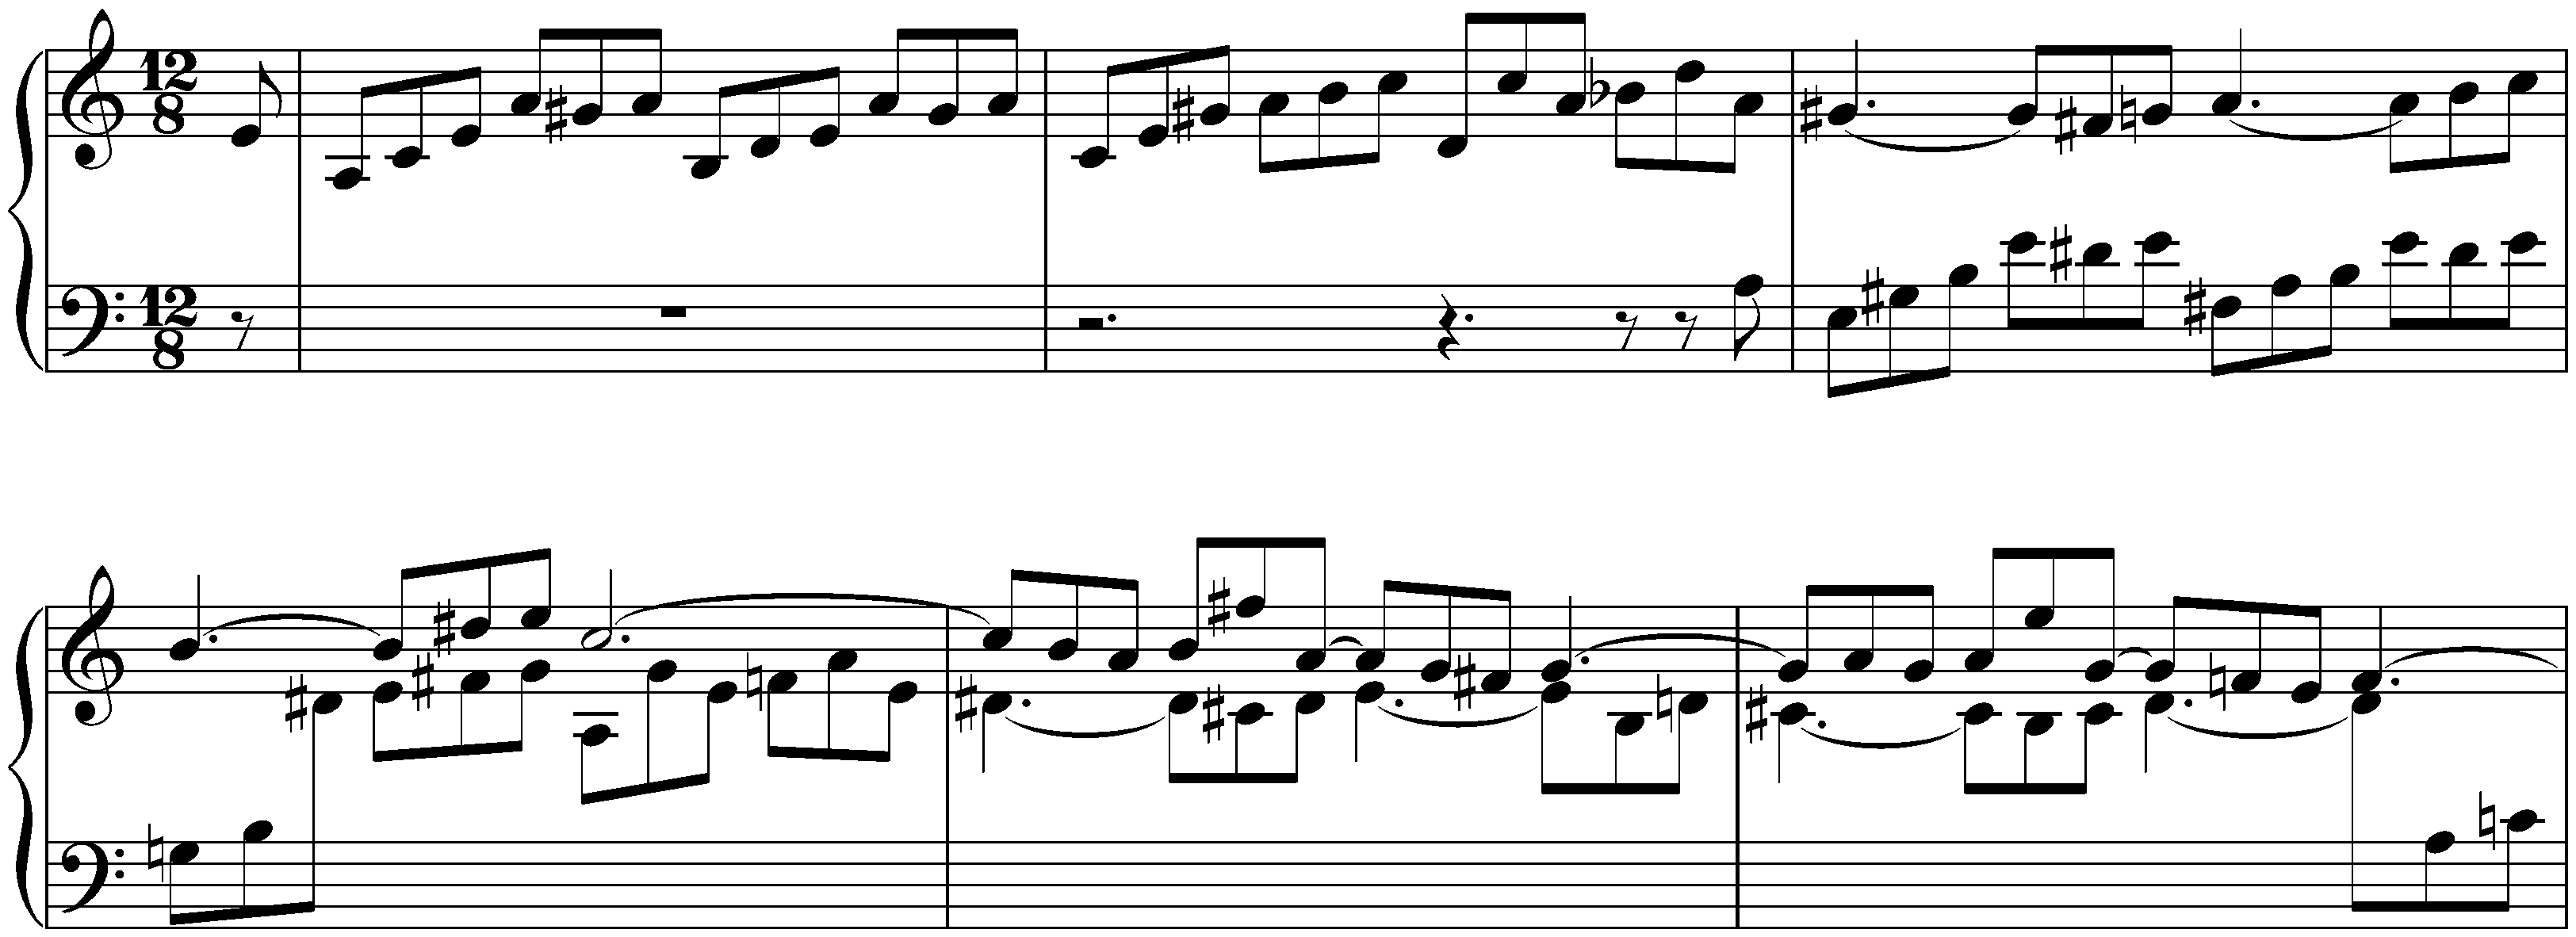 Partita no. 3 in A minor, BWV 827; 7. Gigue